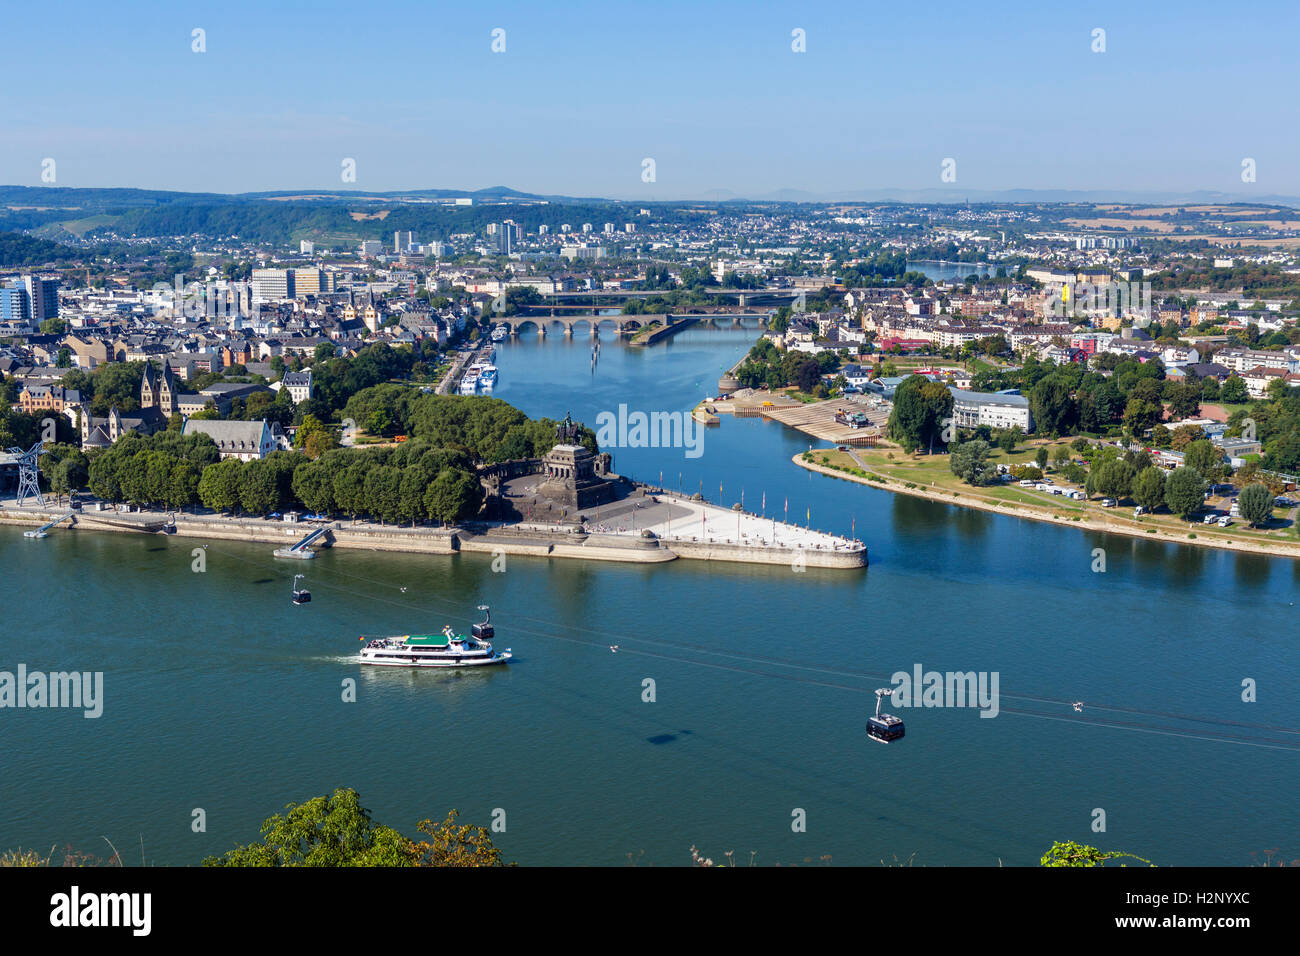 Rhine and Moselle rivers from Festung Ehrenbreitstein (Ehrenbreitstein Fortress), Koblenz, Rhineland-Palatinate, Germany Stock Photo